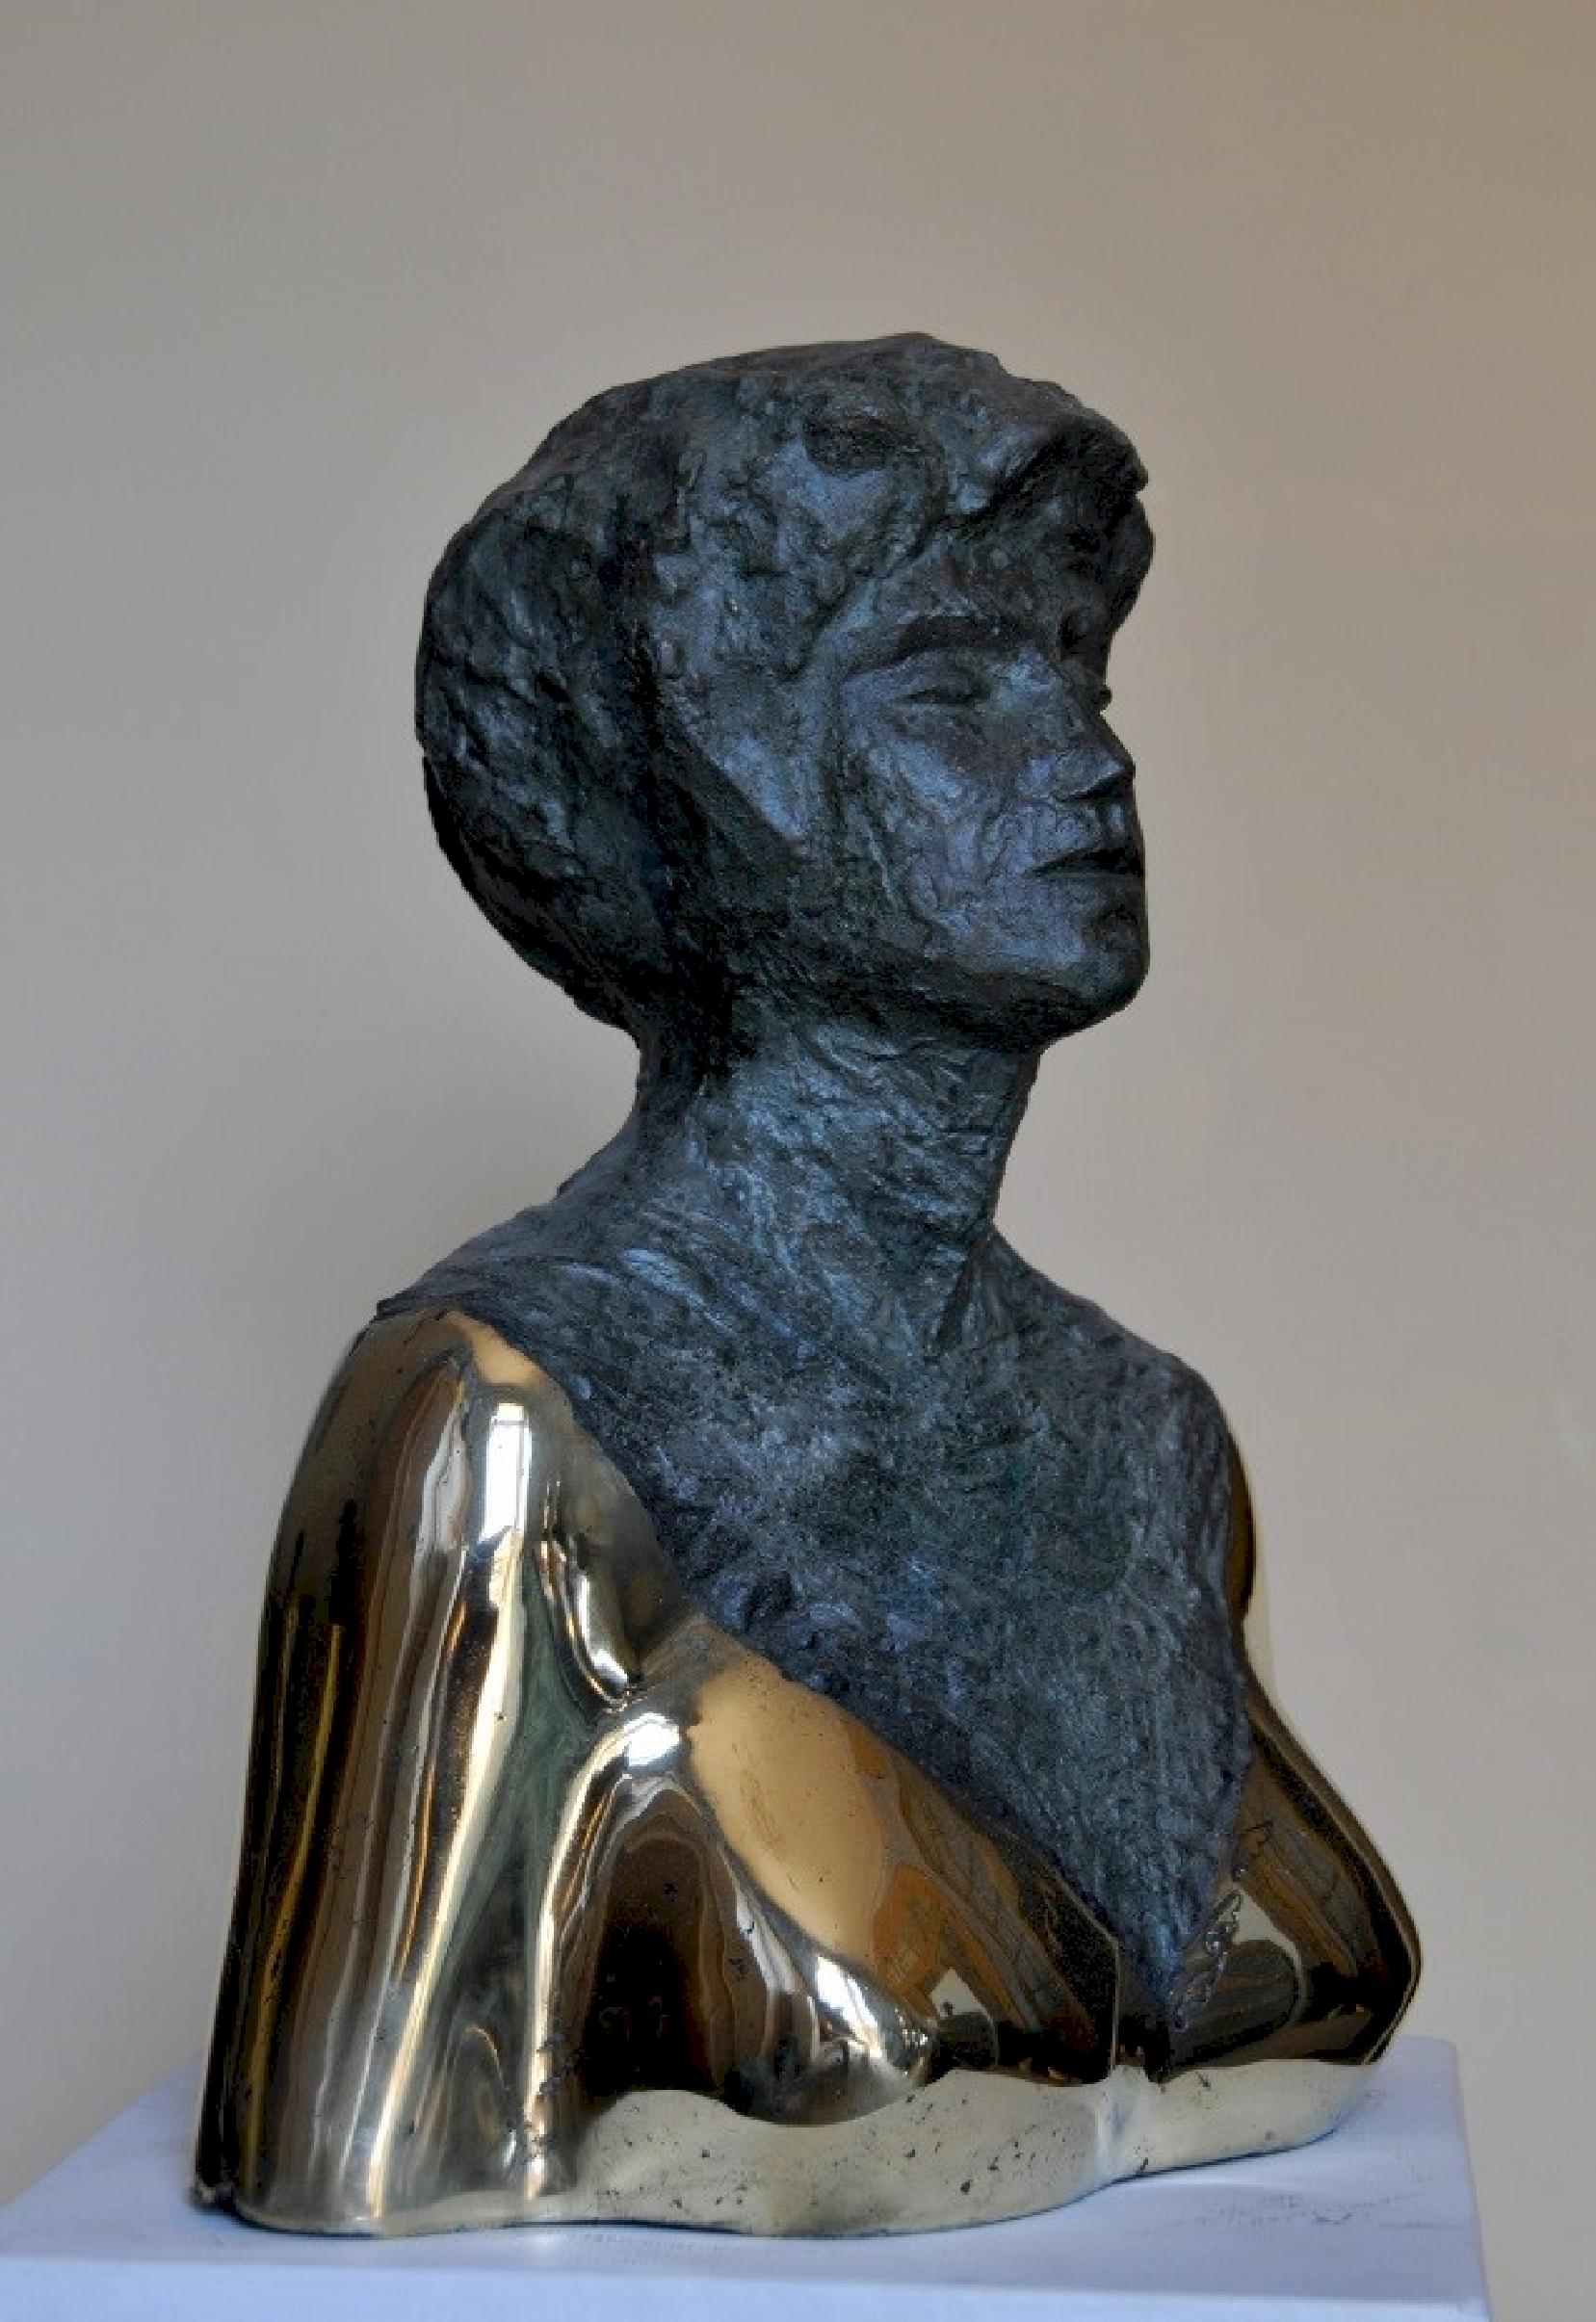 „Peggy“ Bronzeskulptur 18" x 15" x 8" Zoll von Sarkis Tossonian

Sarkis Tossoonian wurde 1953 in Alexandria geboren. Er schloss sein Studium an der Fakultät für Bildende Künste/Bildhauerei 1979 ab. Seit 1980 und bis heute stellt er in Einzel- und